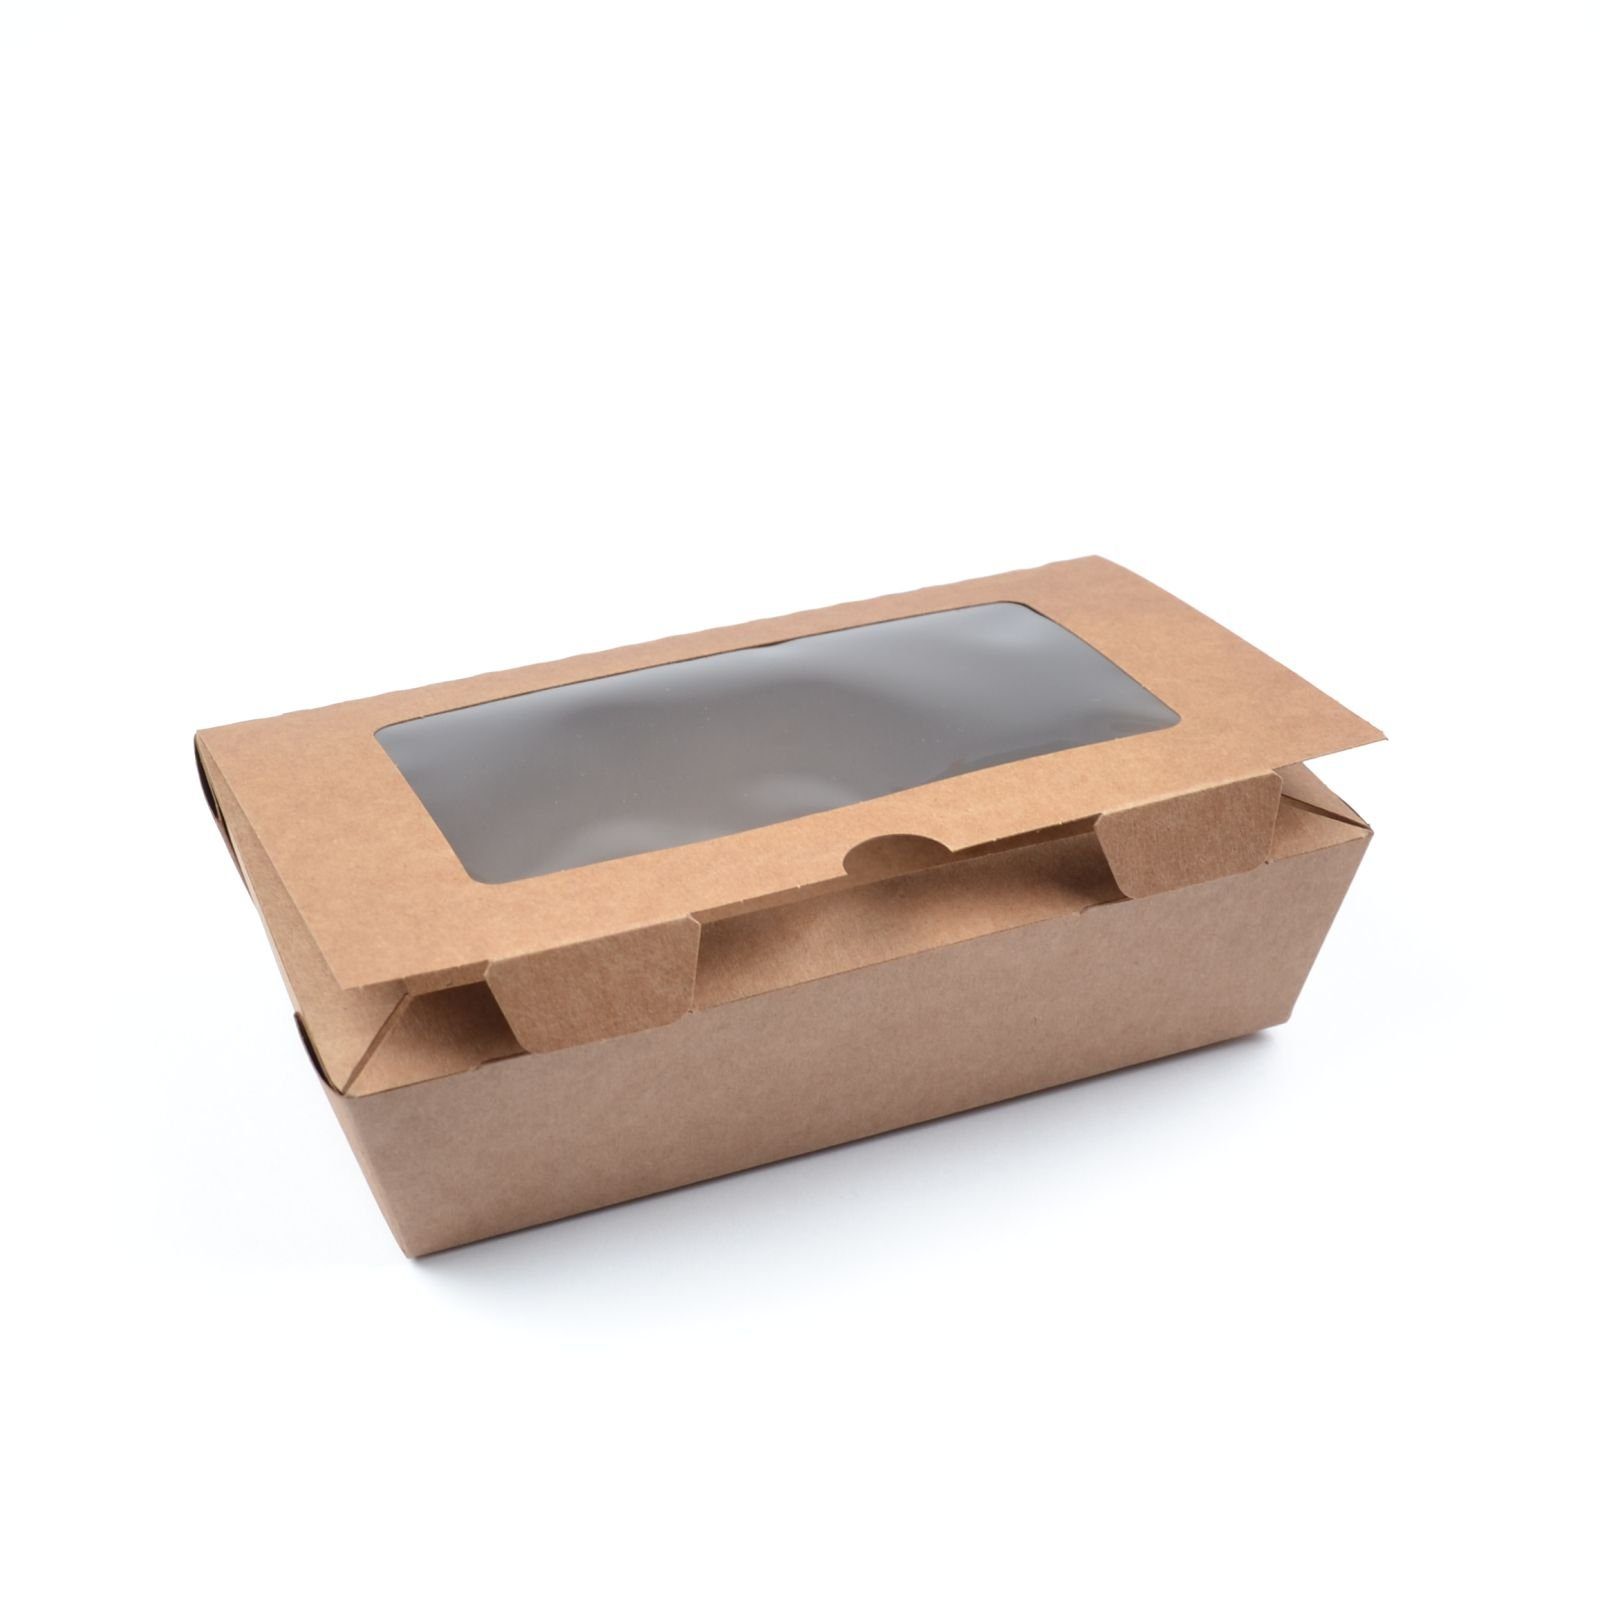 M), Sichtfenster Stück mit Box Foodcase Fast Snackbox Boxen (Größe kraft, mit Food (180×100×50 Food Einwegschale mm), Fenster 50